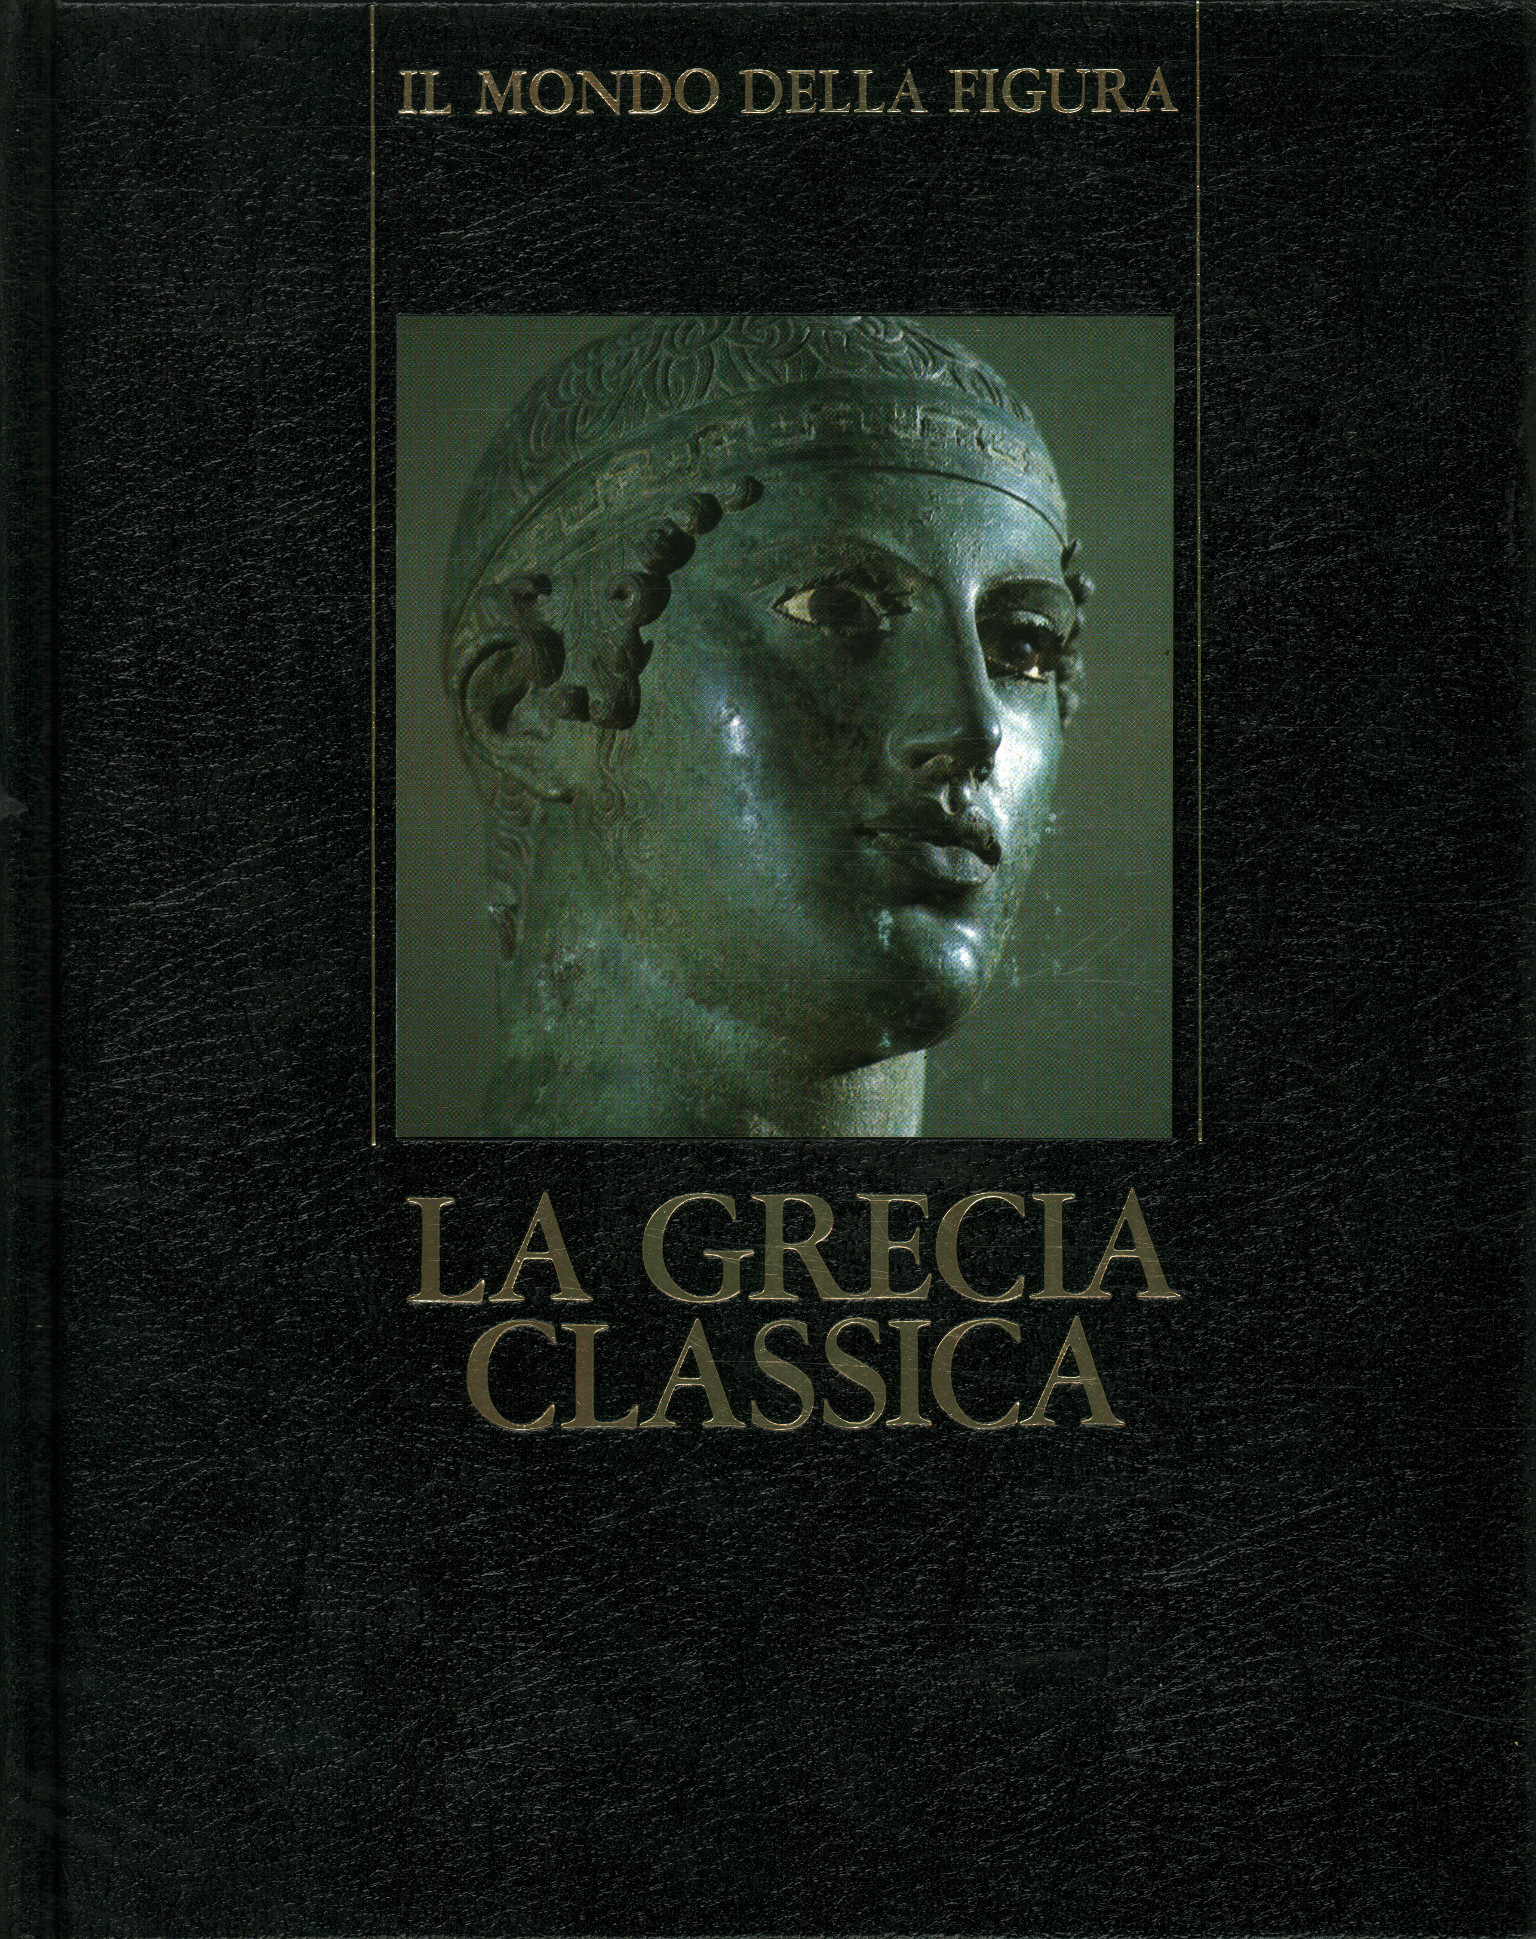 Klassisches Griechenland (480 - 330 v. Chr.), Klassisches Griechenland (480 - 330 v. Chr.)